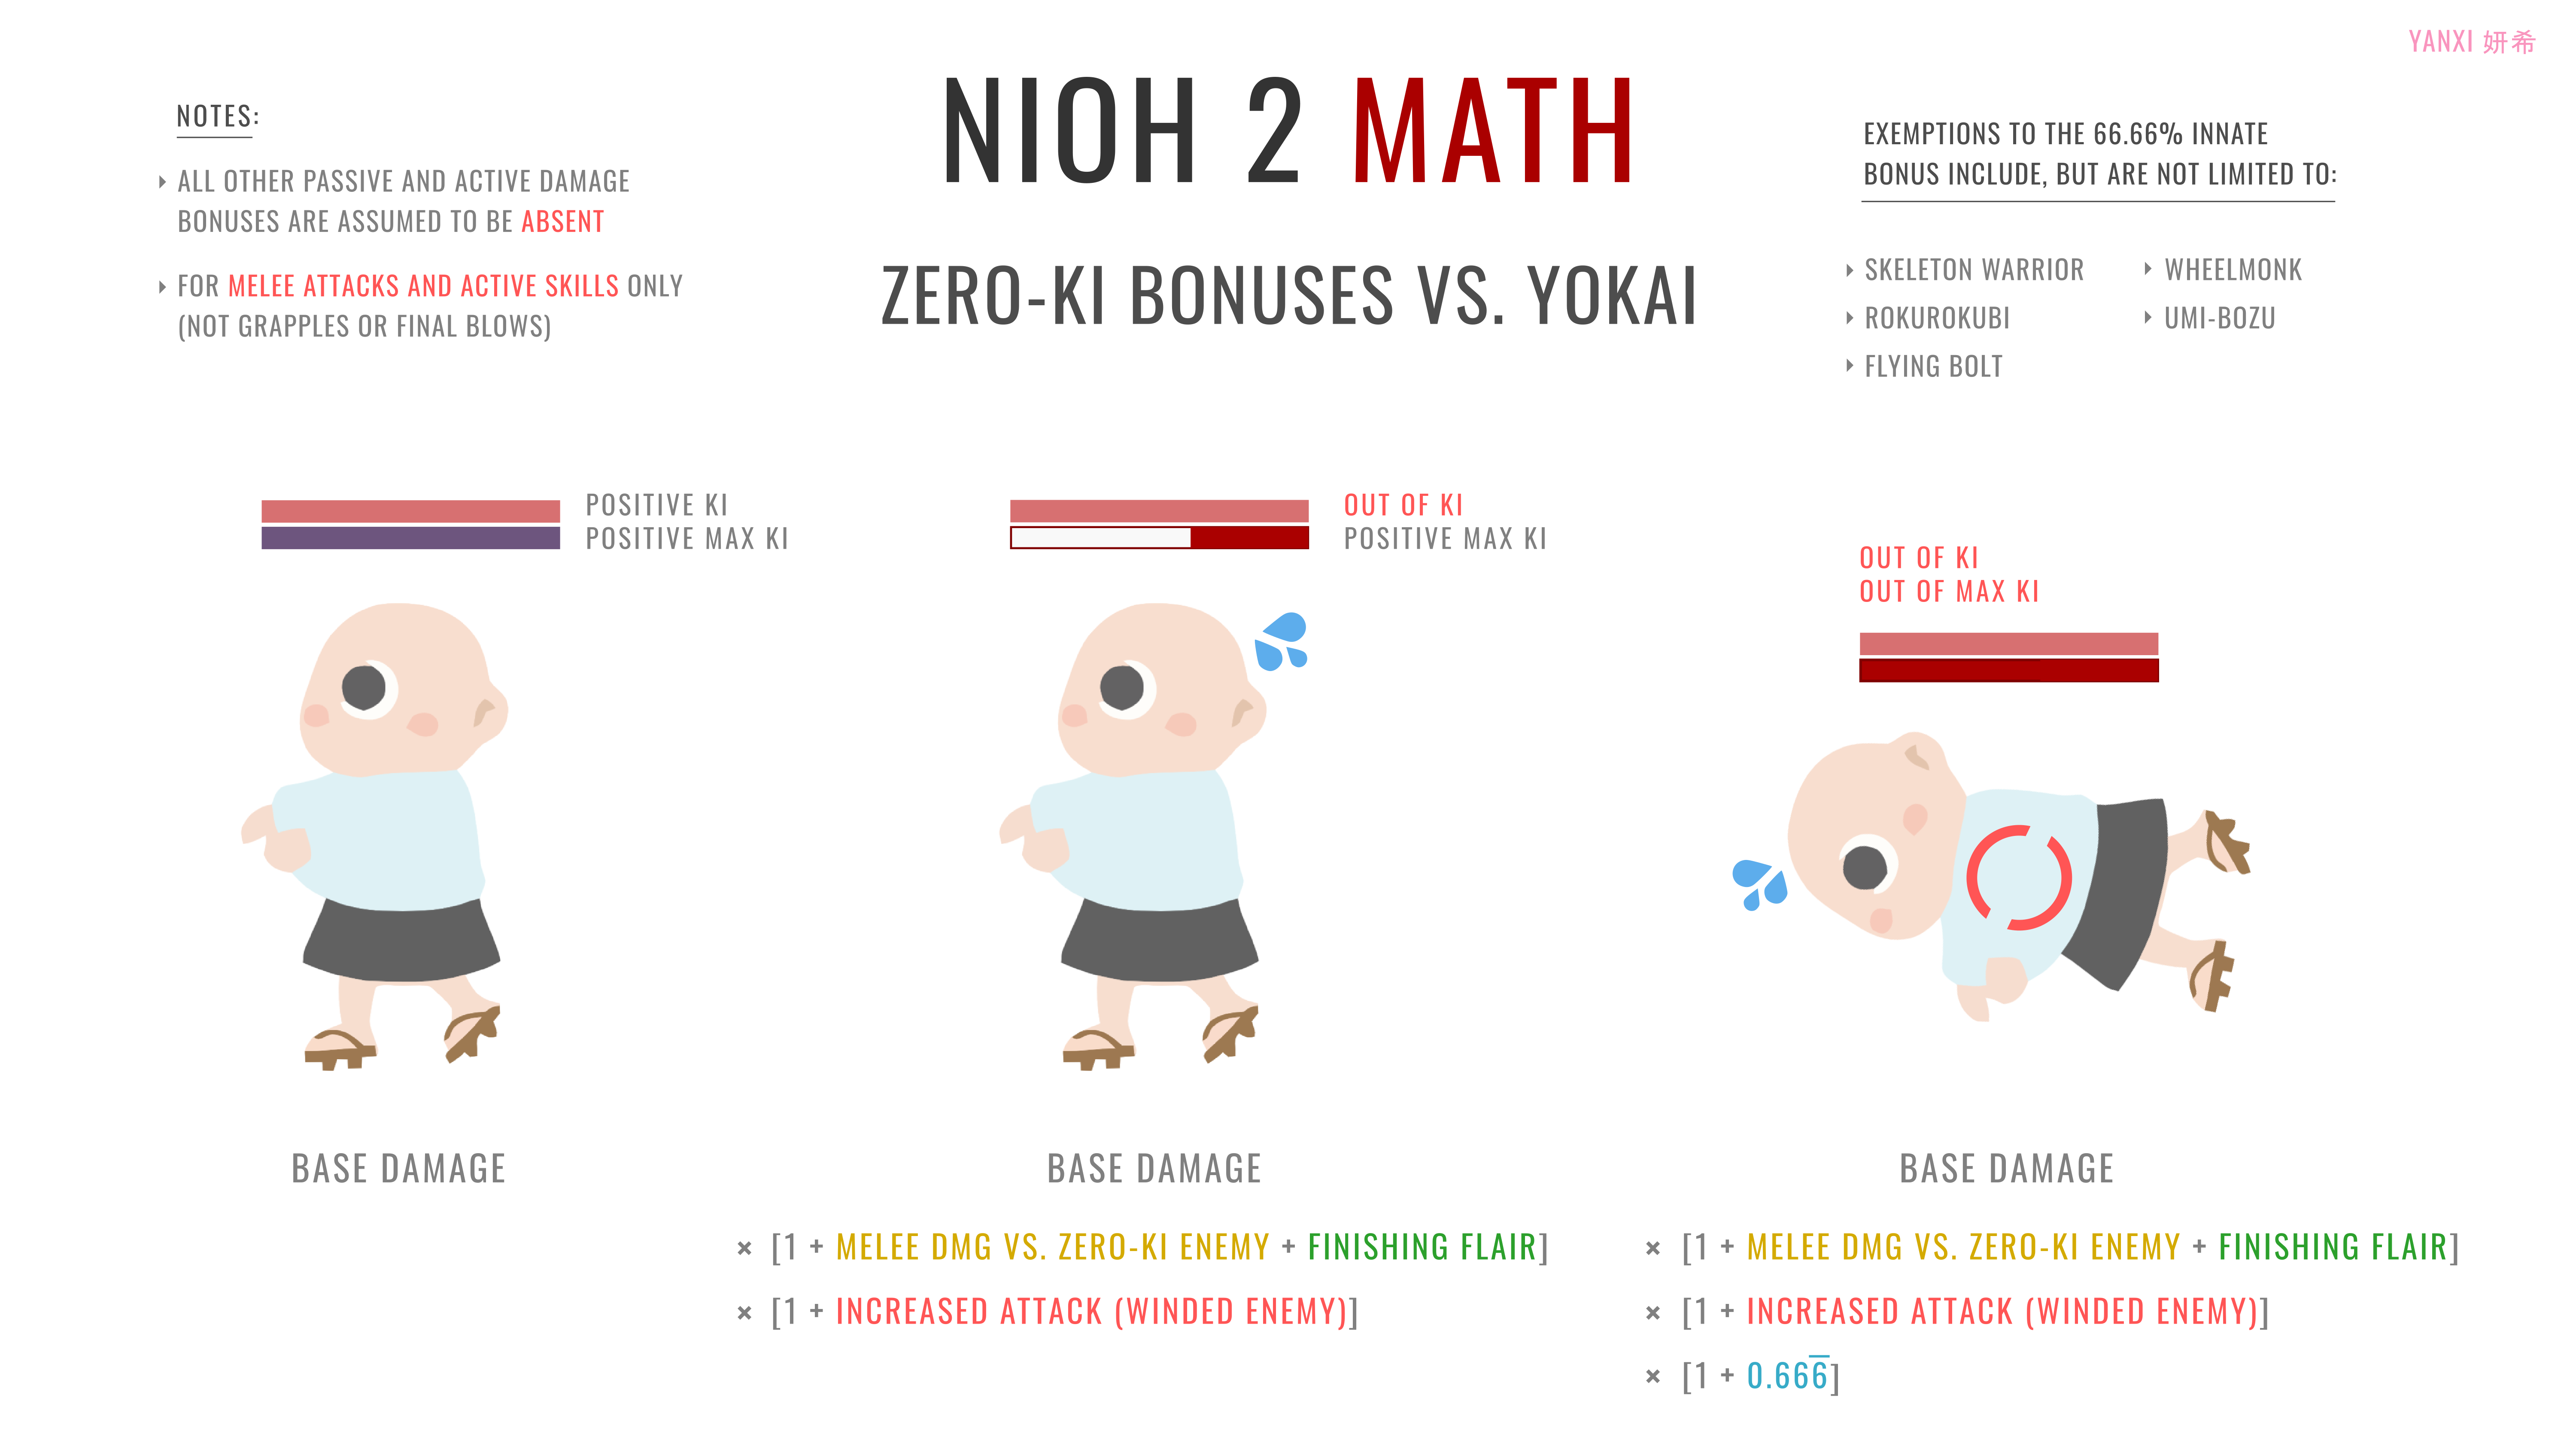 Nioh 2 – The Complete Edition The Stacking of Zero-ki Bonuses Against Yokai - TL;DR